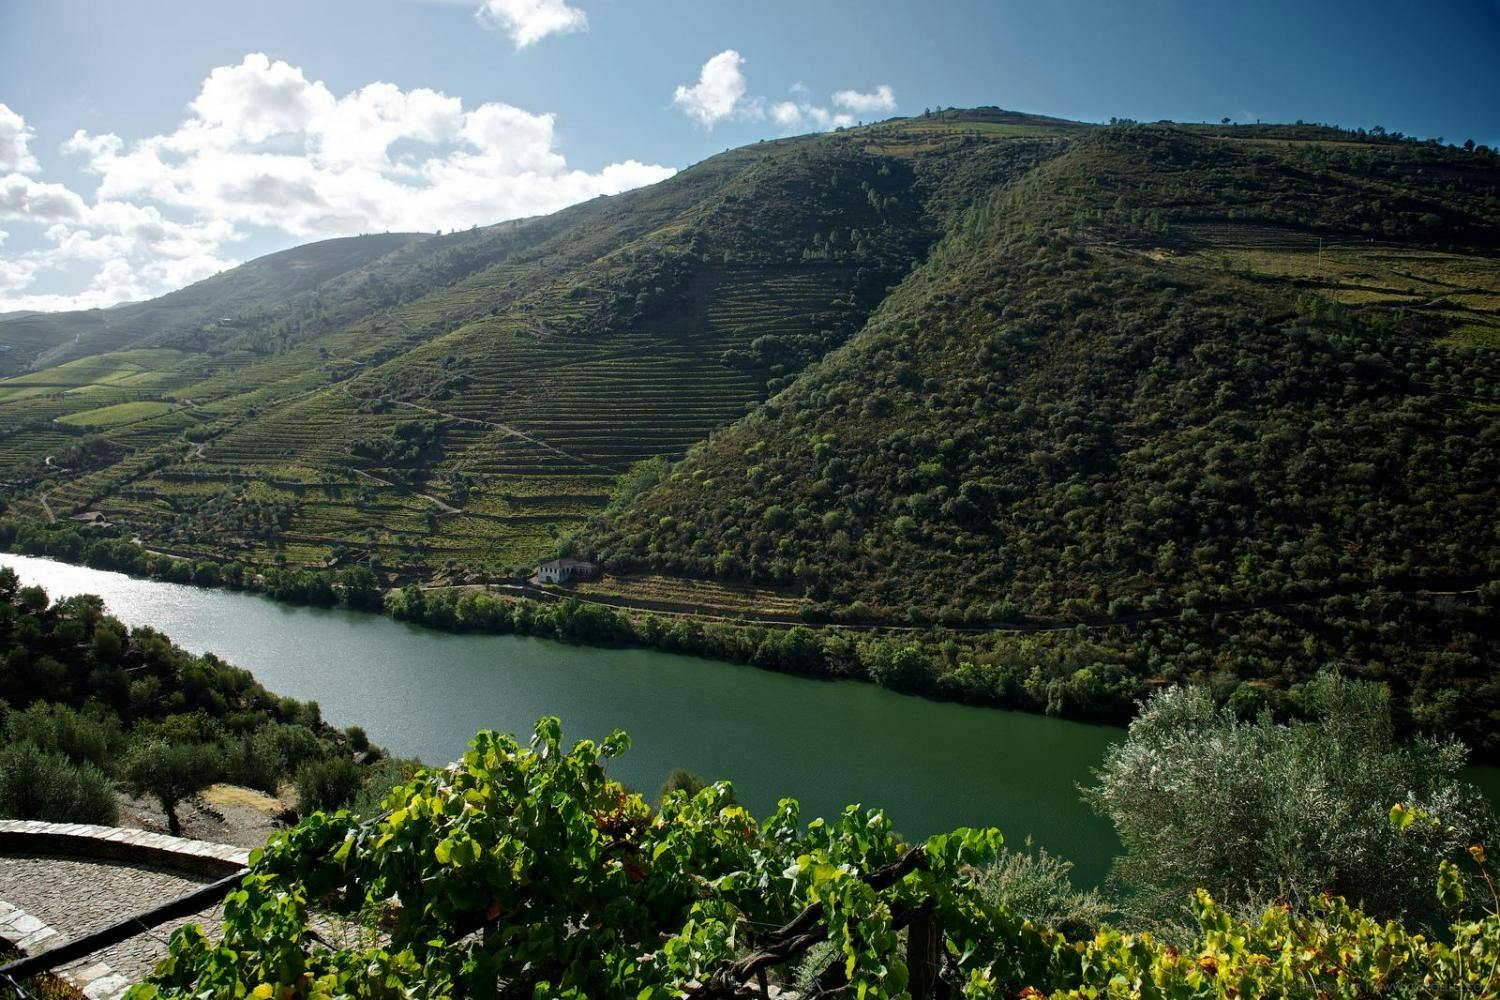 Geführte Tour auf dem Douro mit Flusskreuzfahrt und Besuch von Weingütern